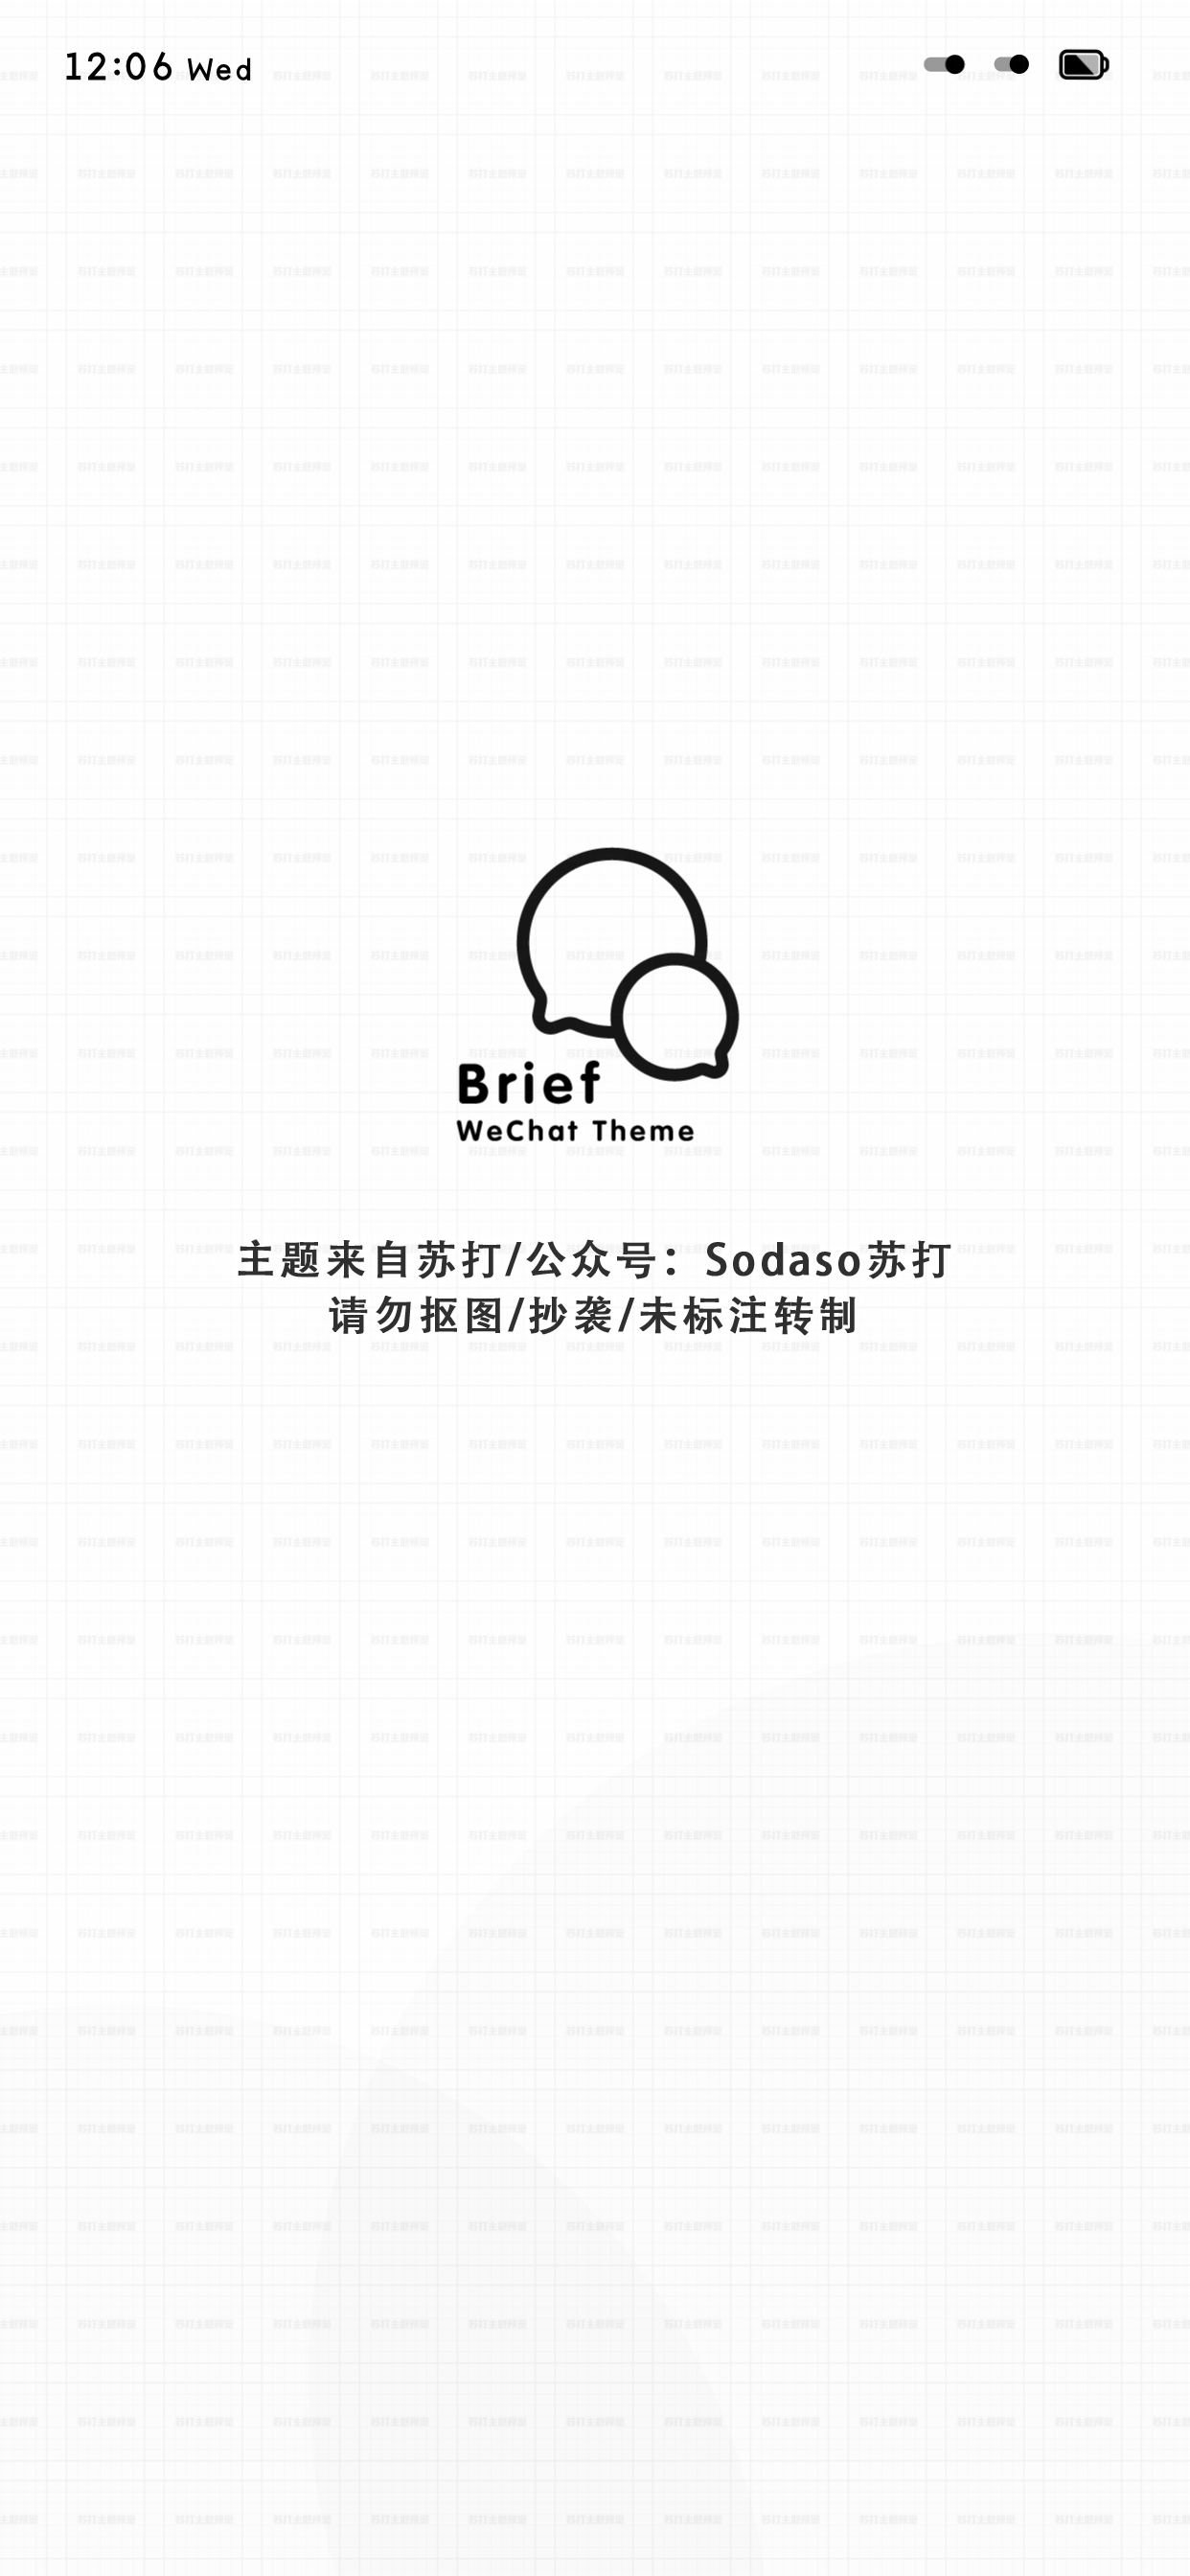 Brief WeChatTheme（微信主题） - 1.2